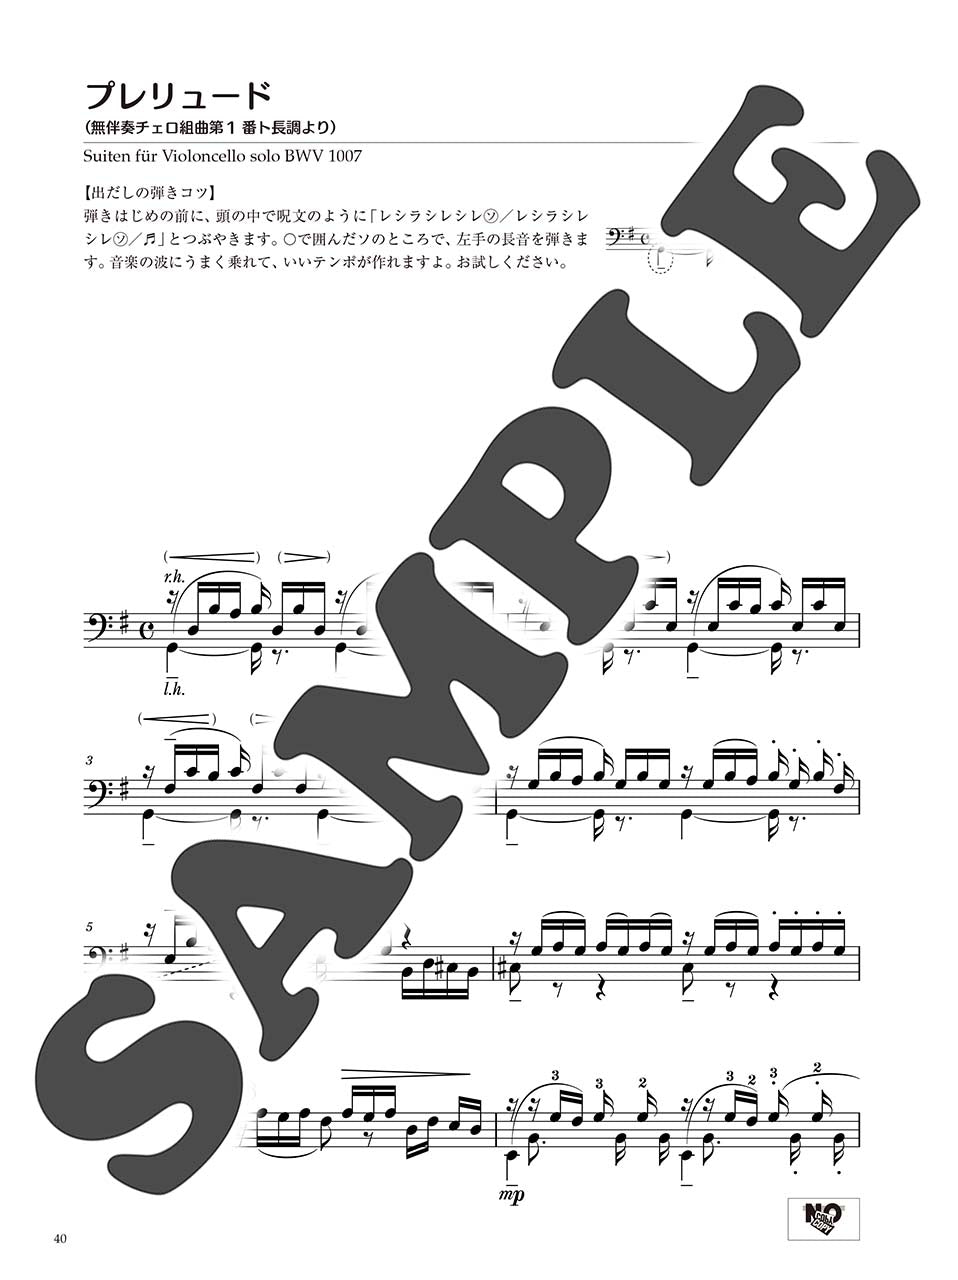 ピアノソロ 初中級 バッハの名曲を弾きたい! 管弦楽曲からカンタータまで… 編曲:塚谷水無子_4